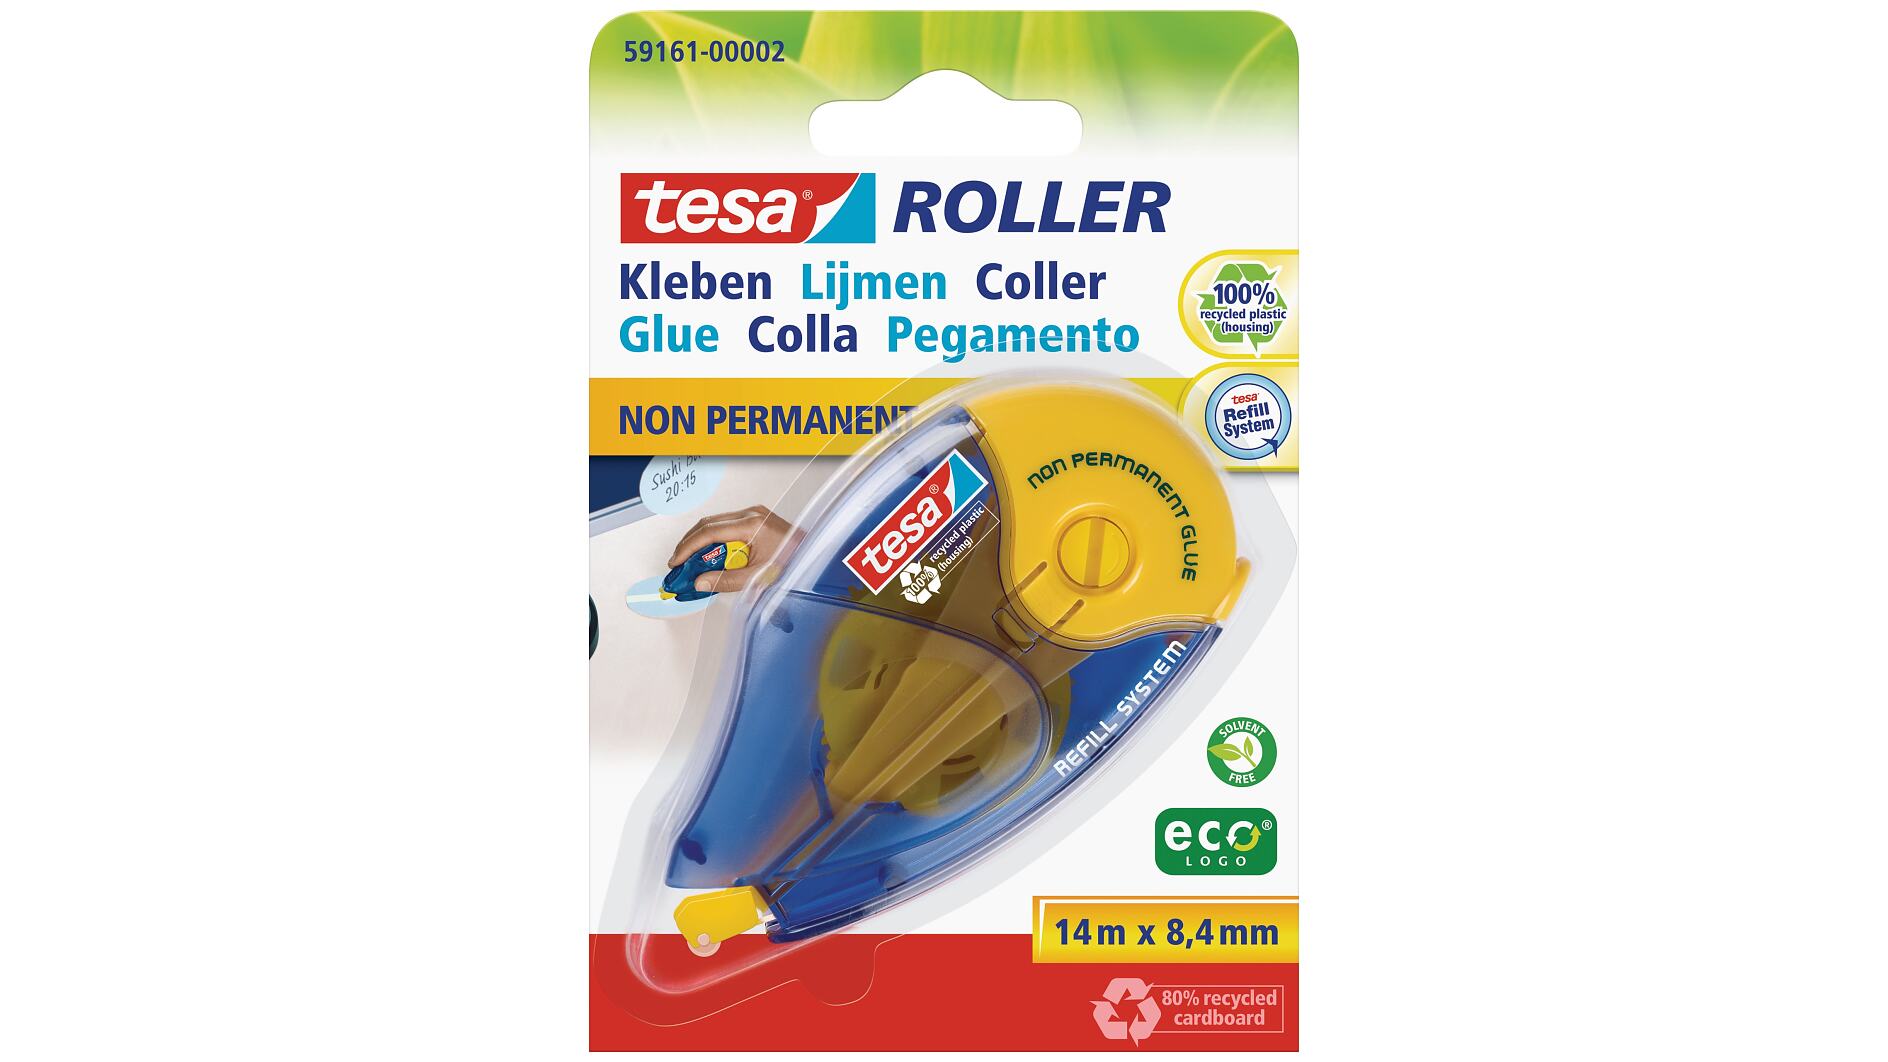 tesa® Roller Colle non-permanente ecoLogo® - tesa